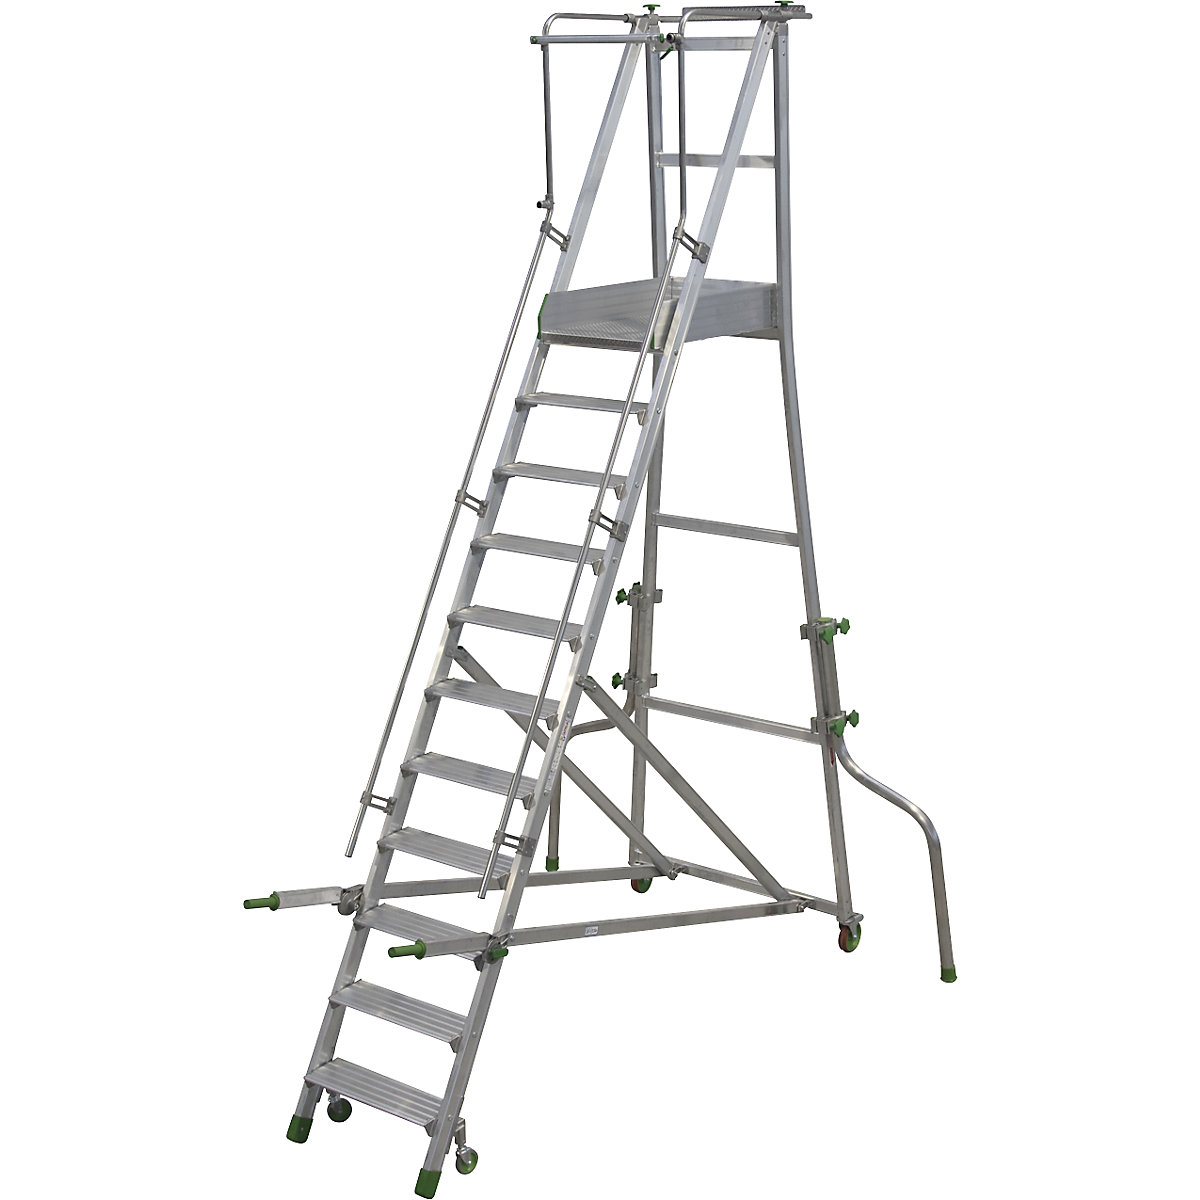 Mobile Alu-Podesttreppe, klappbar, mit gerieften Aluminiumstufen, 11 Stufen inkl. Plattform